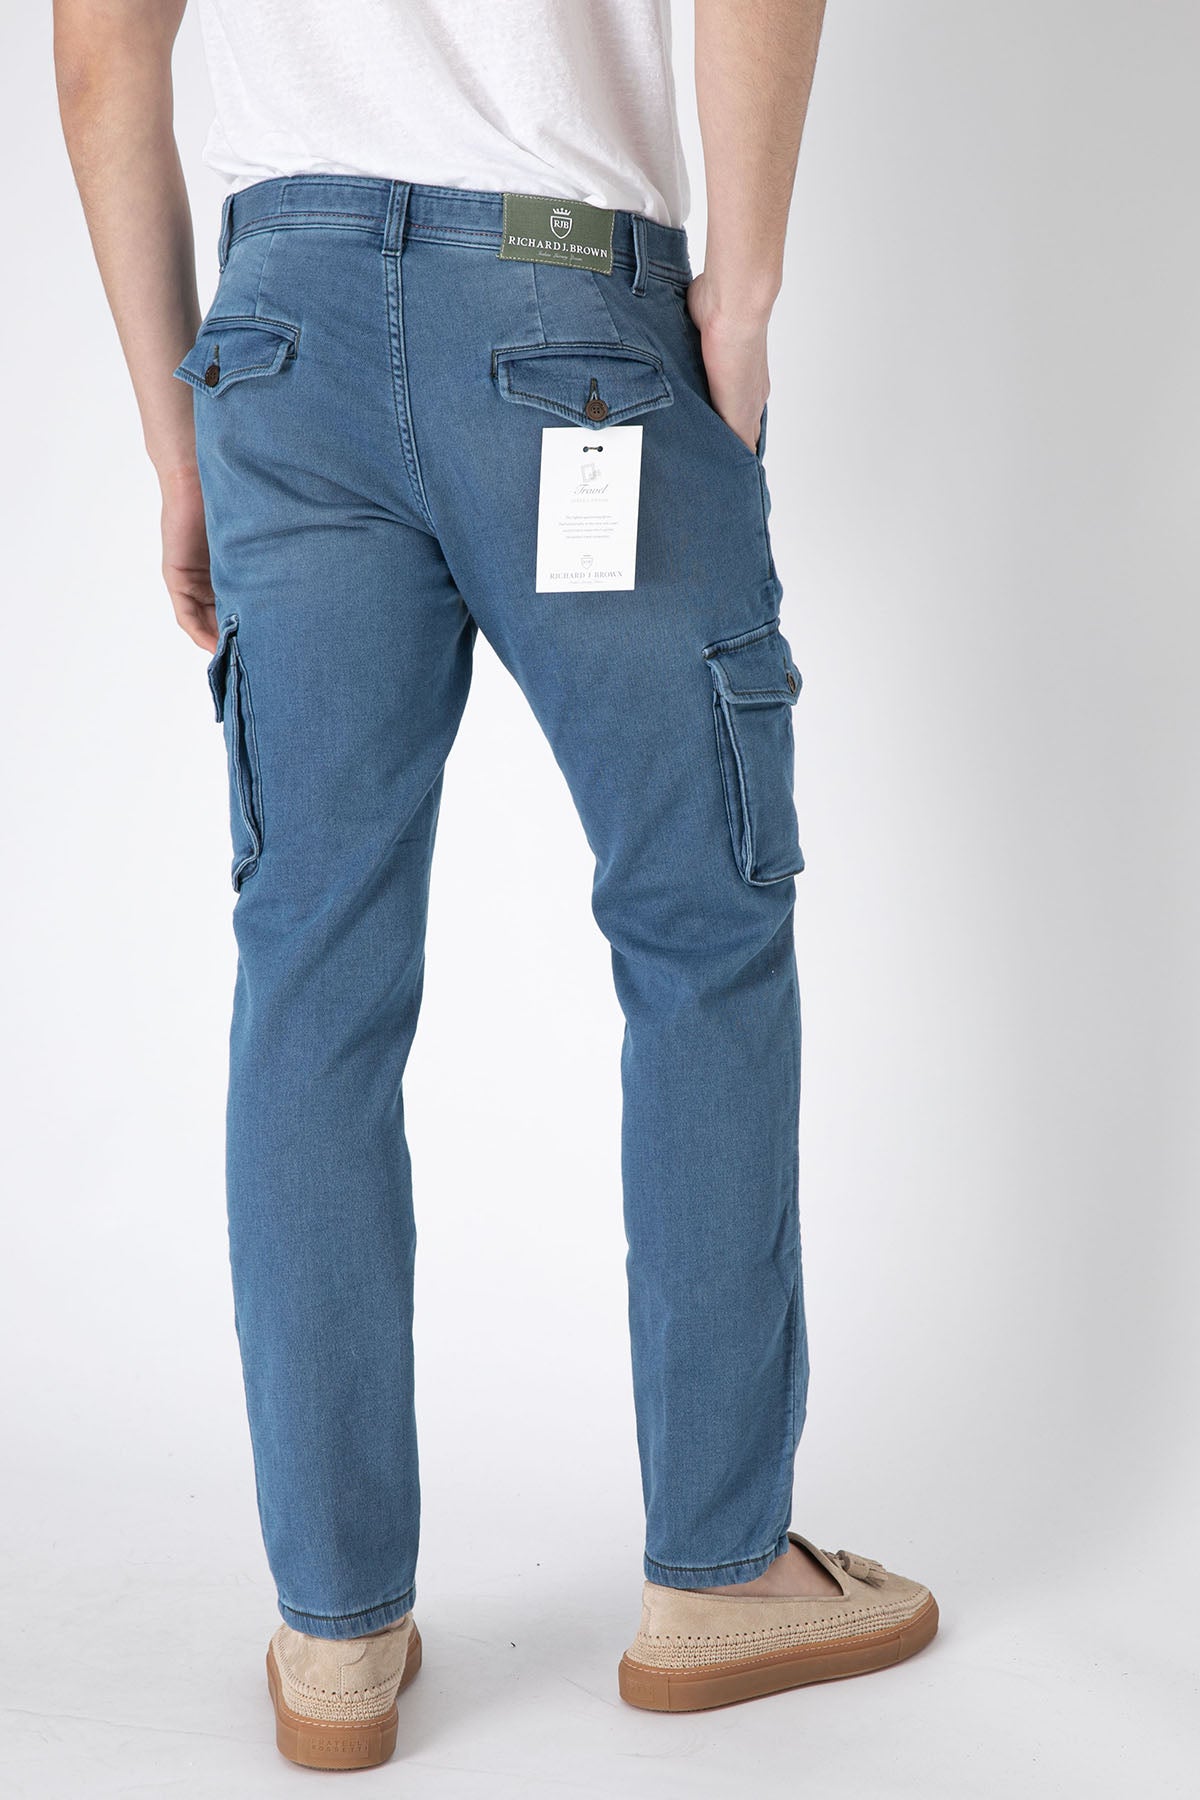 Richard J. Brown Slim Fit Yandan Cepli Kargo Jeans Pantolon-Libas Trendy Fashion Store